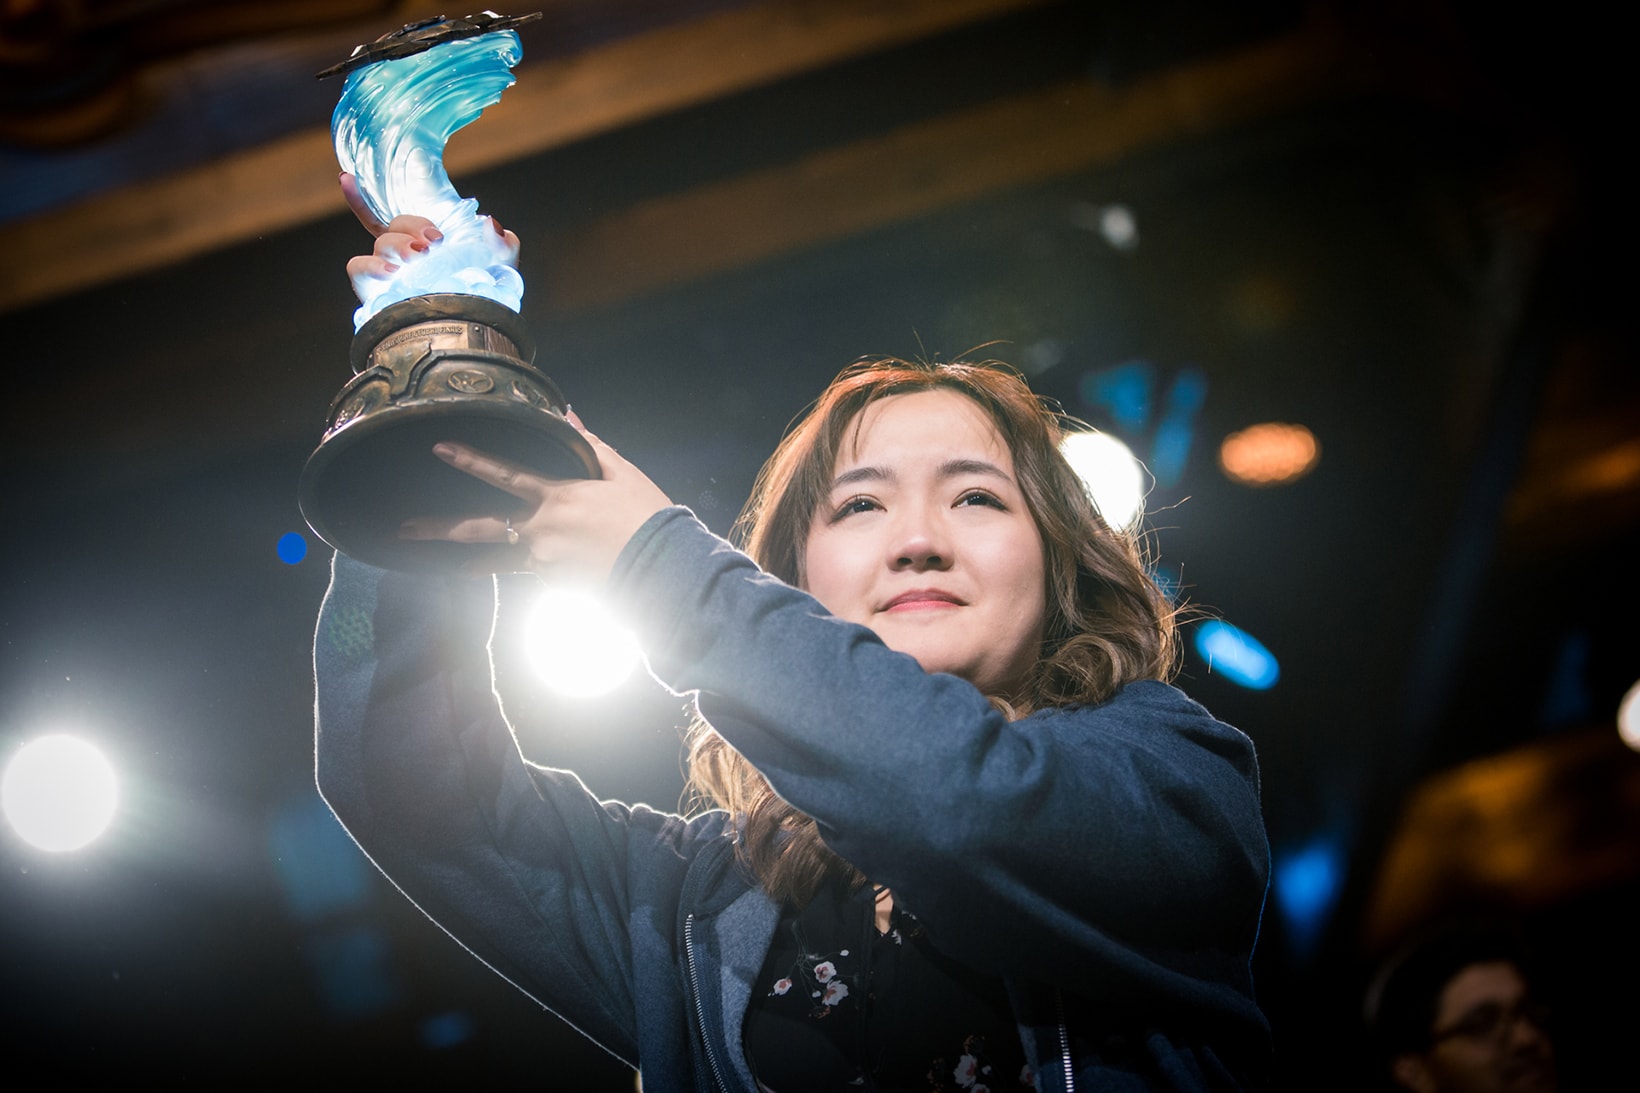 blizzcon finals hearthstone grandmasters li vkliooon xiaomeng first woman winner video games